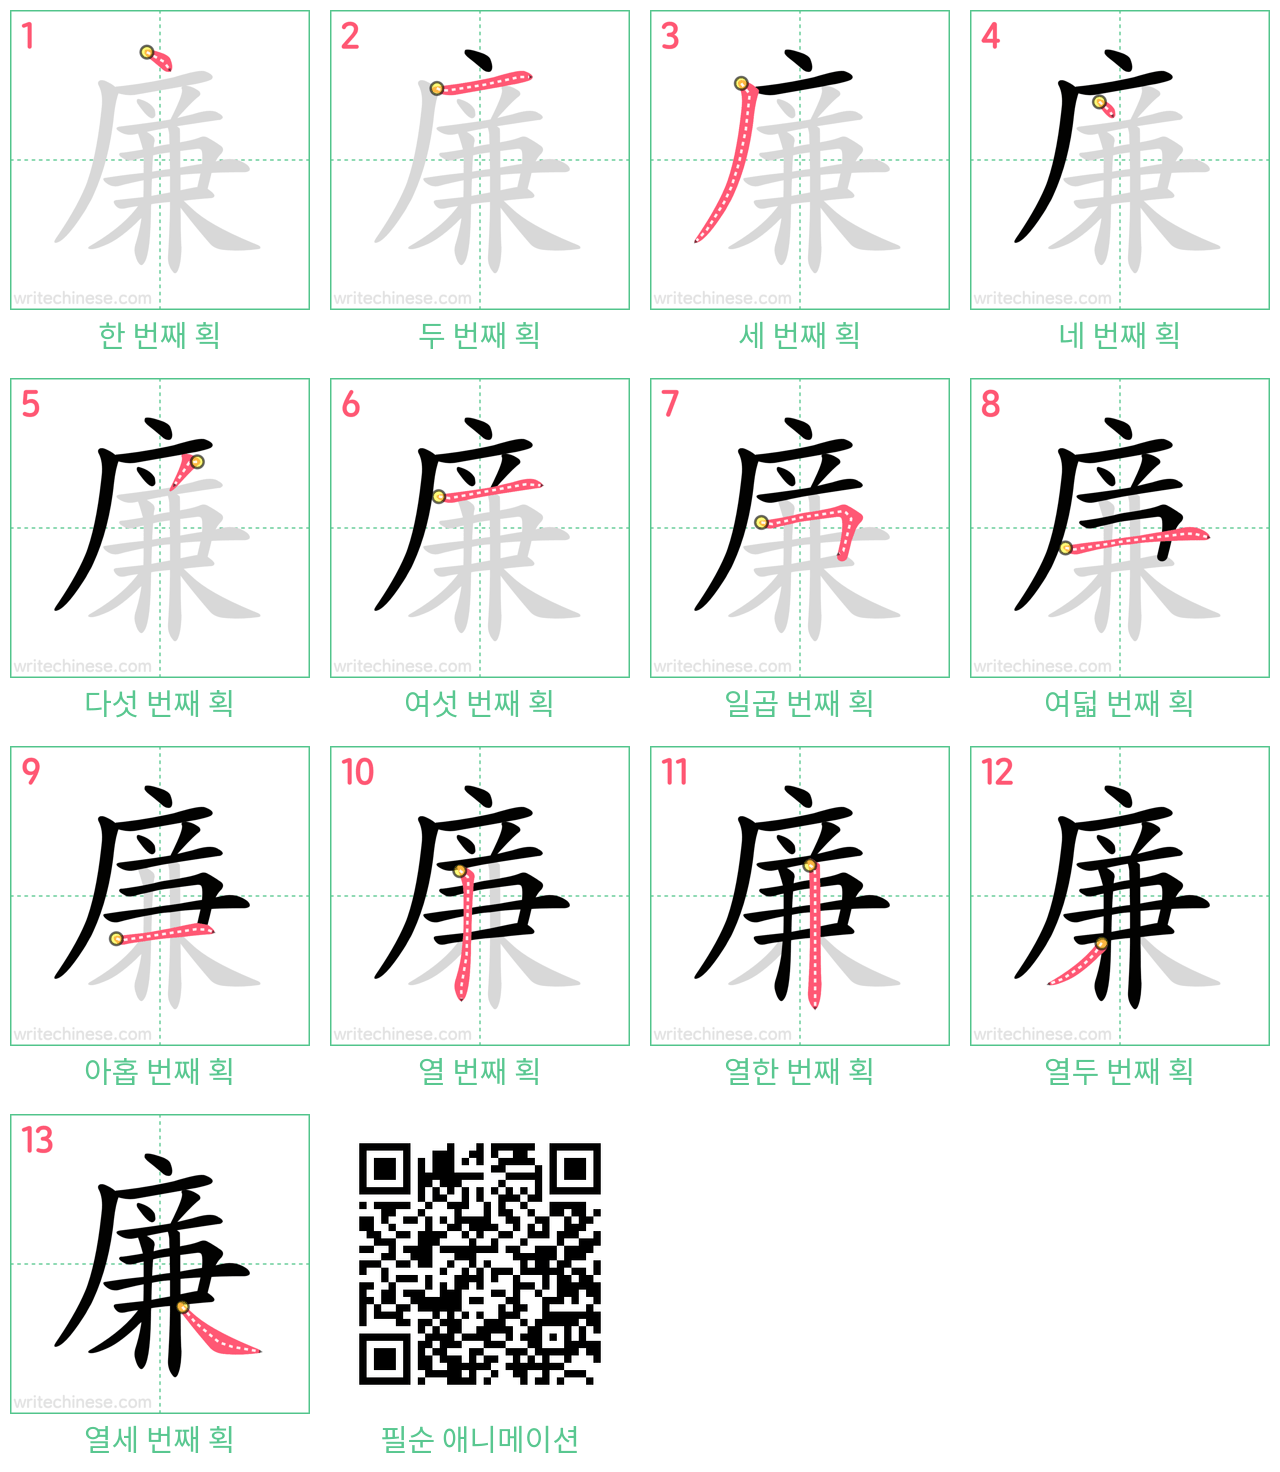 廉 step-by-step stroke order diagrams